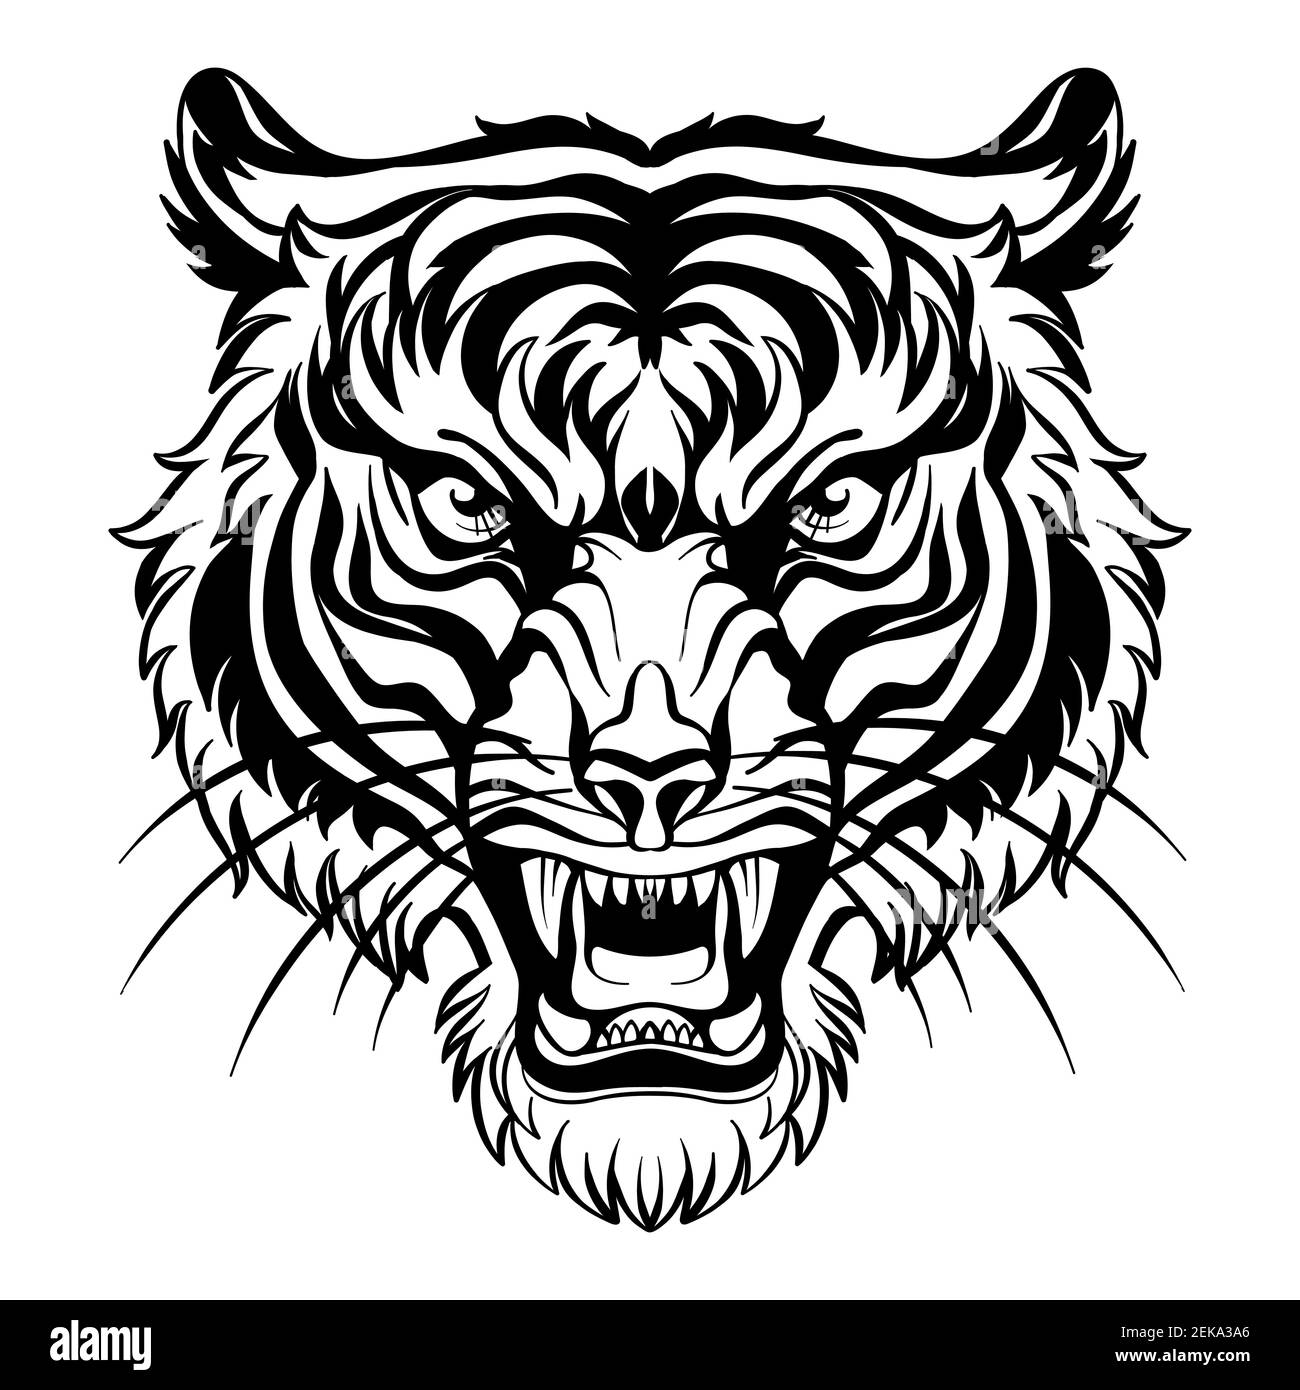 Mascotte. Testa vettore della tigre. Illustrazione nera del gatto selvatico di pericolo isolato su sfondo bianco. Per decorazione, stampa, disegno, logo, club sportivi, ta Illustrazione Vettoriale